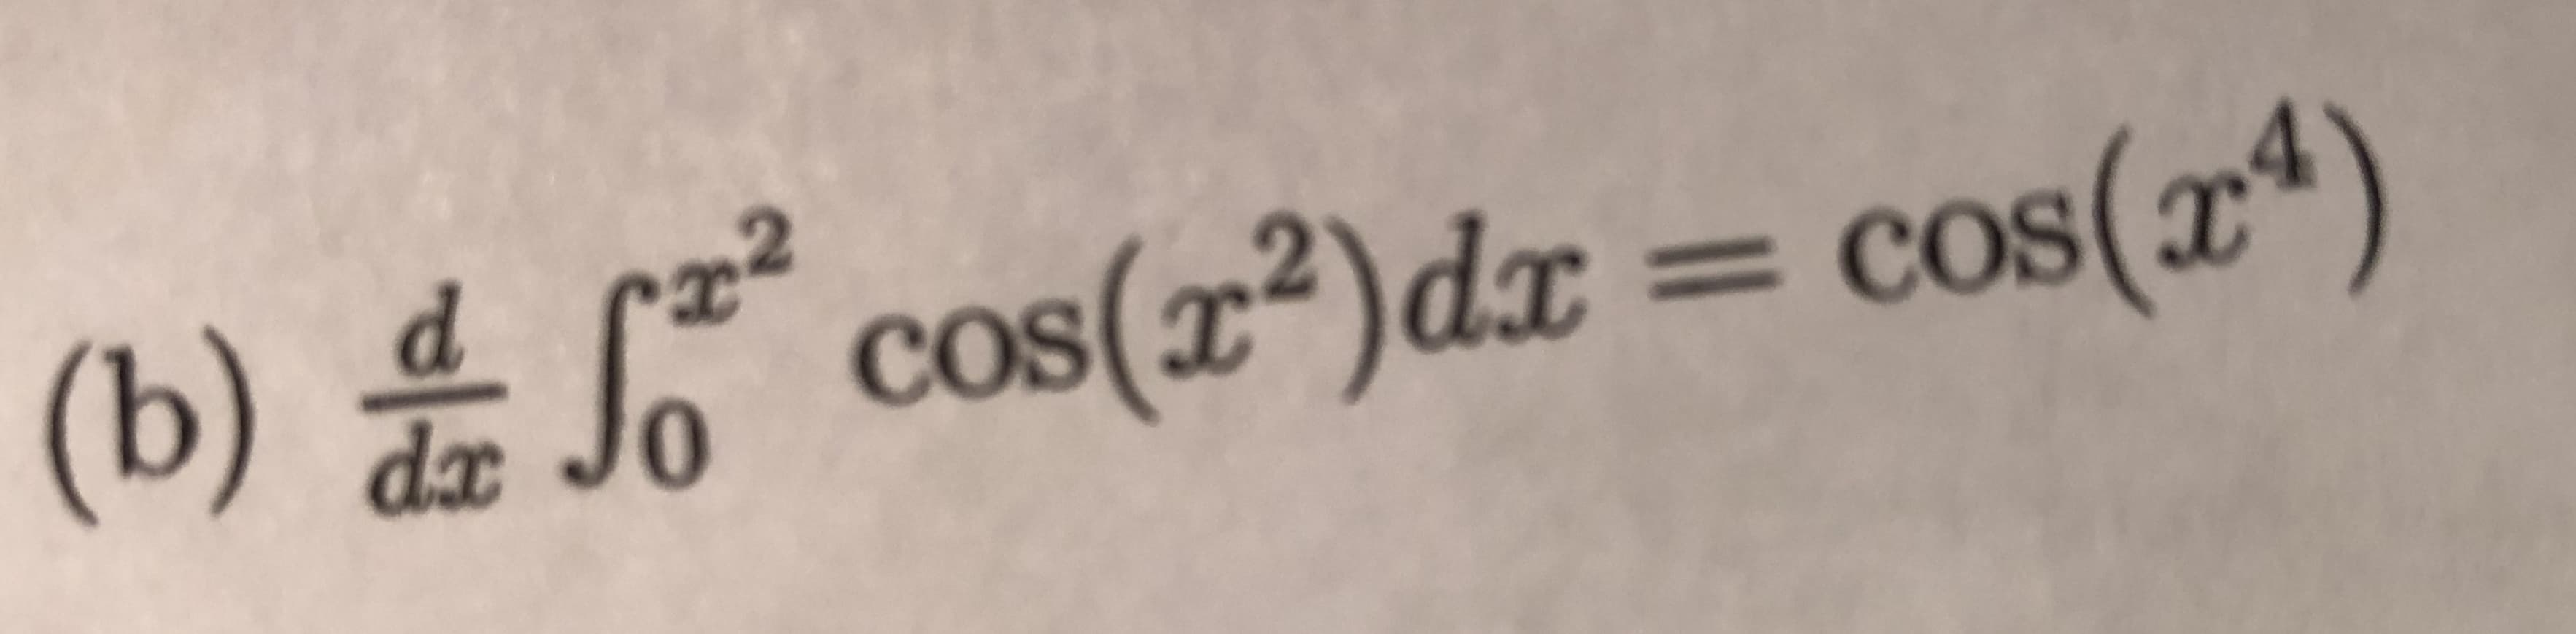 (b) 4 cos(z)dx = cos(x*)
COS
%3D
COs
dx
